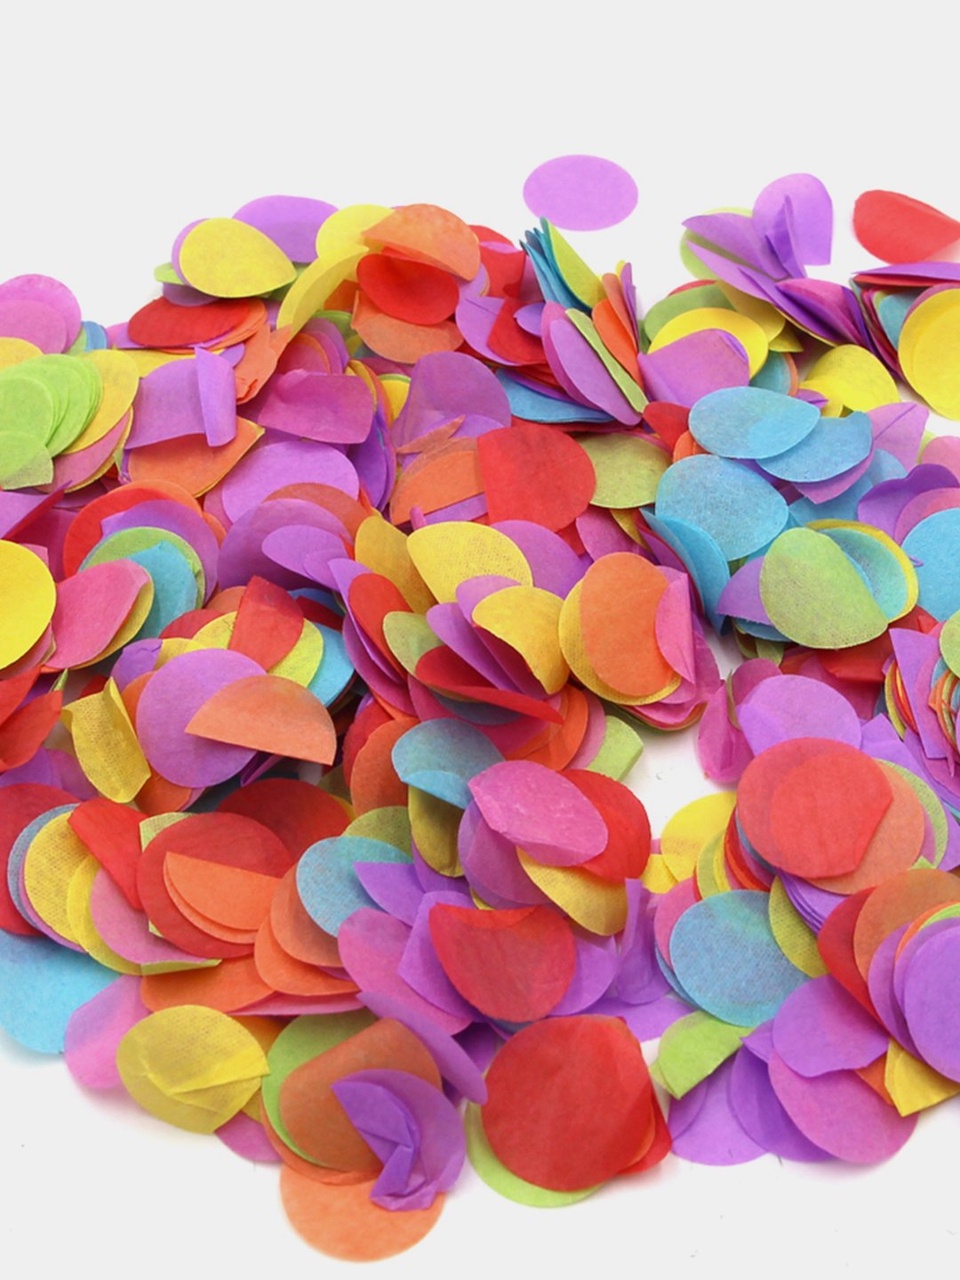 Пневматическая хлопушка 30 см наполнитель конфетти разноцветные круги из бумаги МХ3-30 - 200 ₽, заказать онлайн.